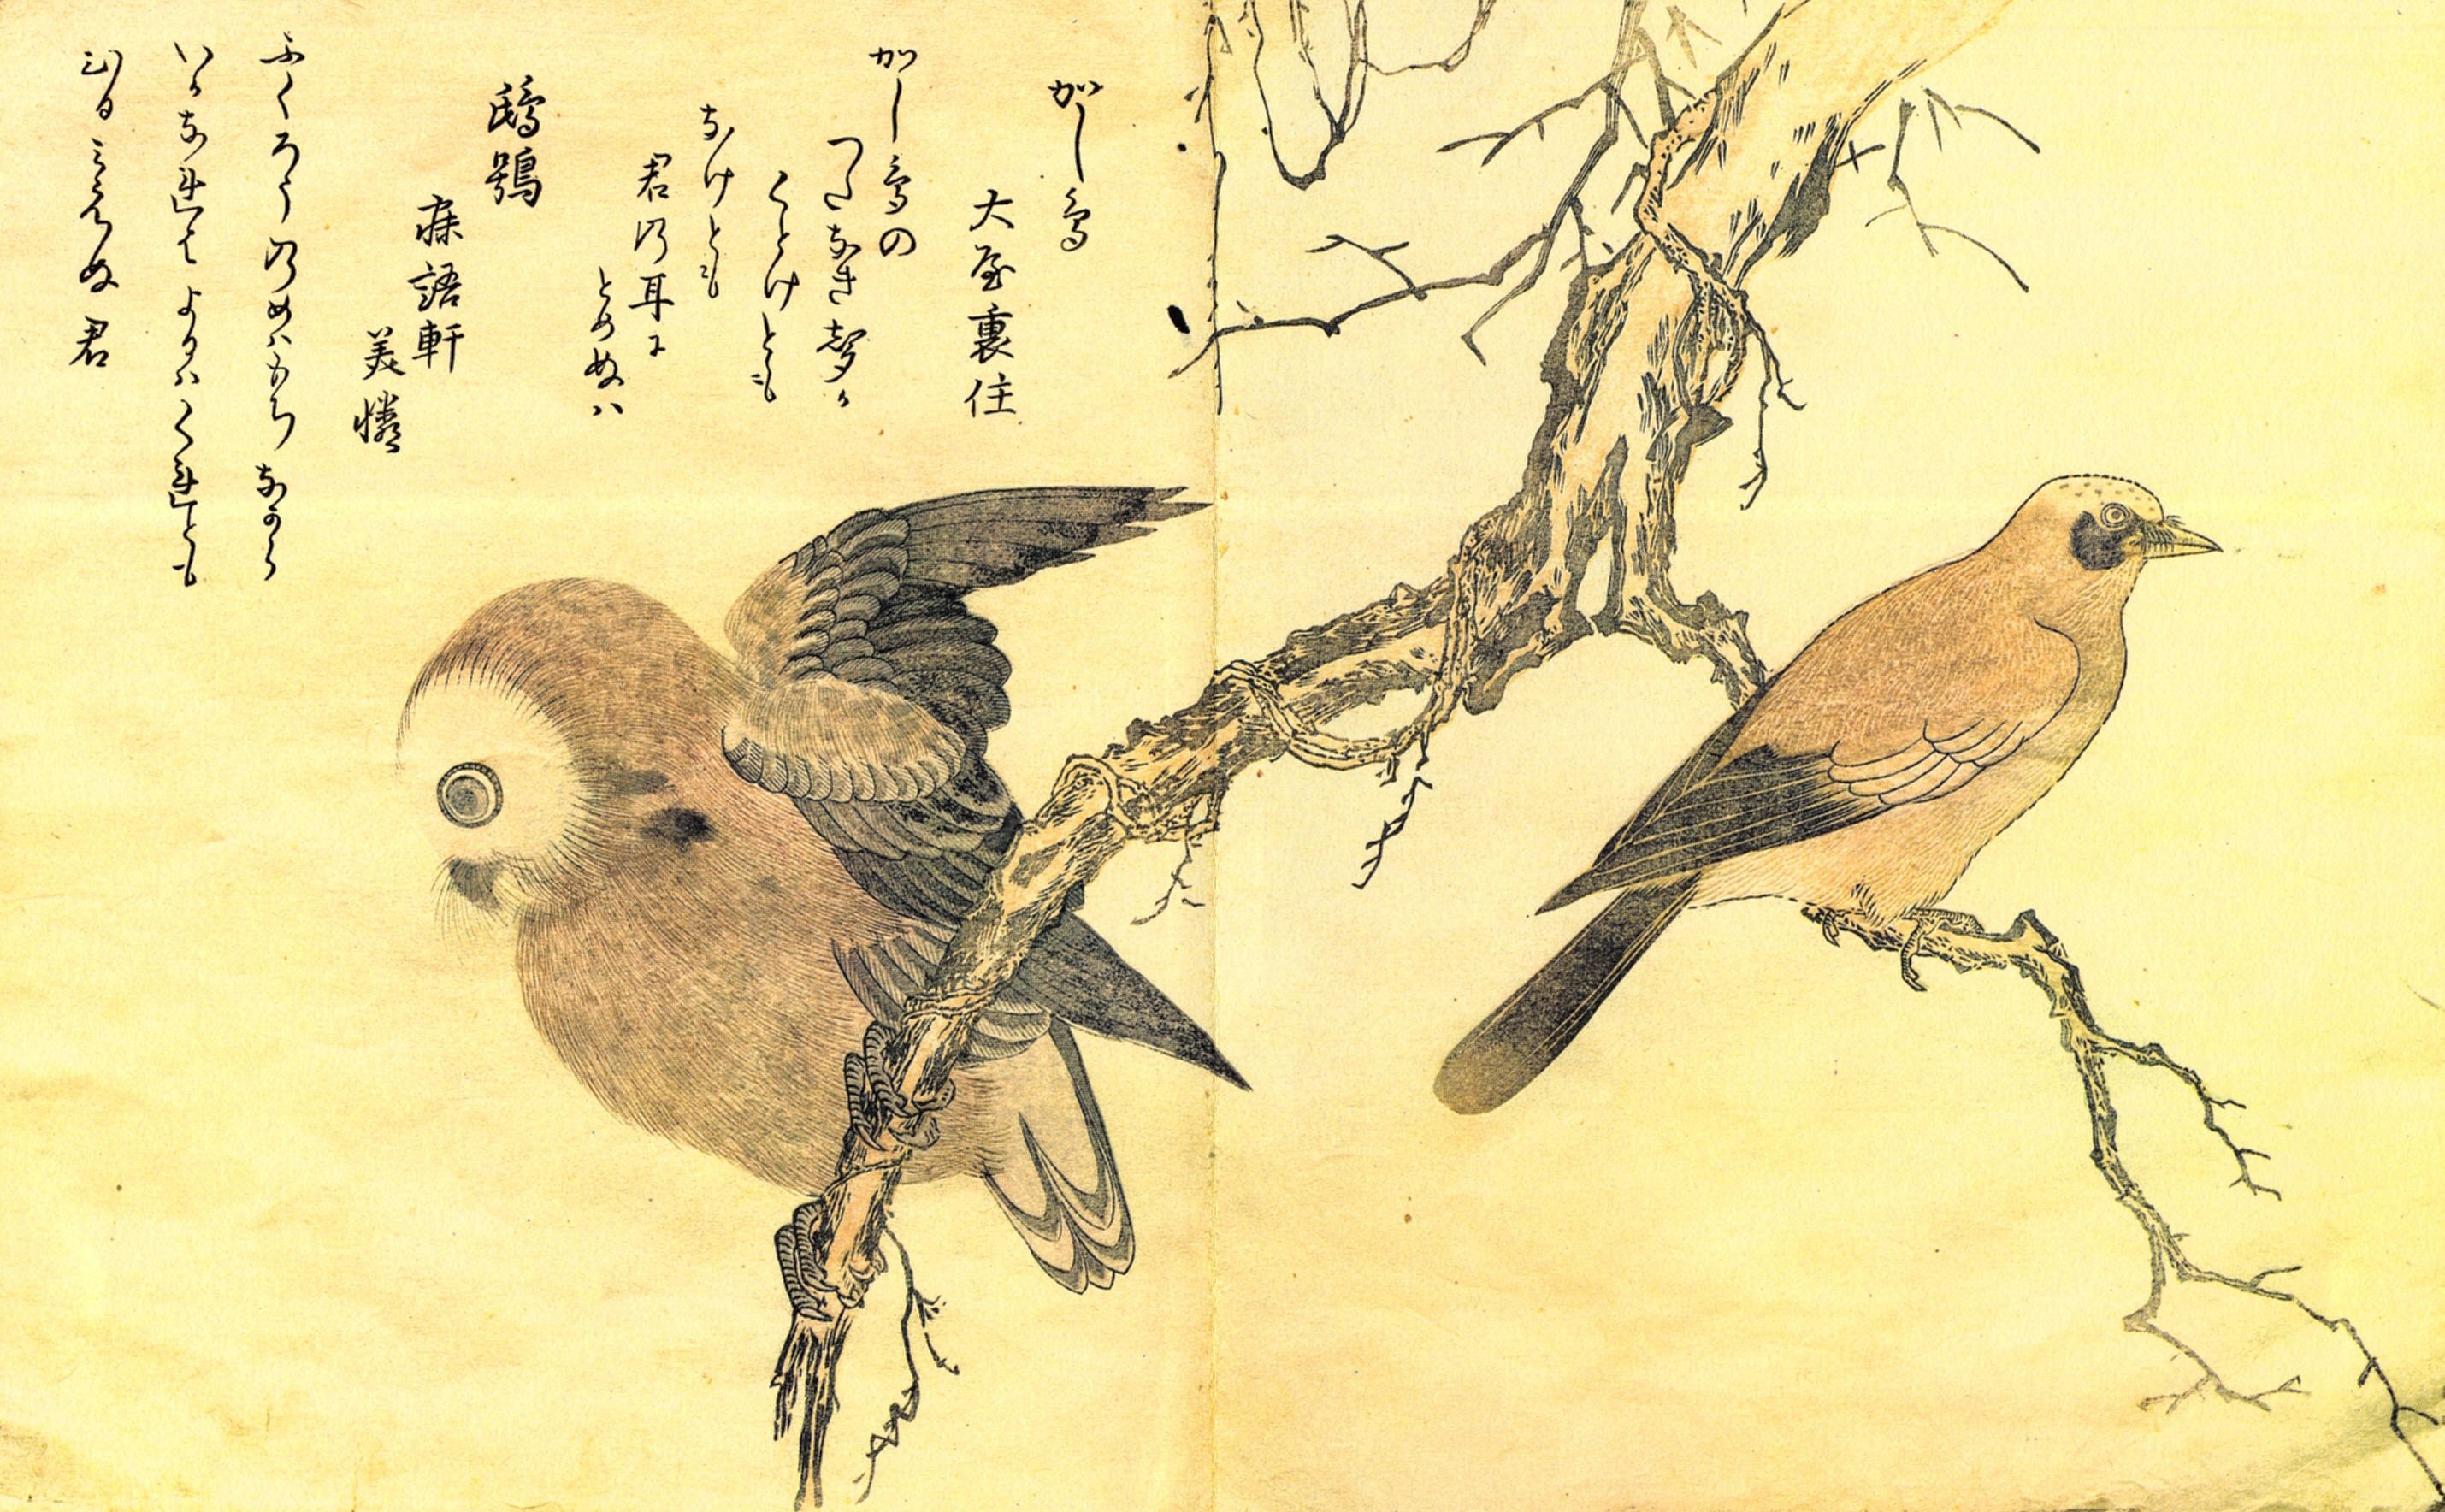 Включи птичка на китайском. Японский художник Китагава Утамаро. Китайская живопись Жанр анималистическая живопись. -Китагава Утамаро - японский художник (1753-1806). Утамаро художник картины.